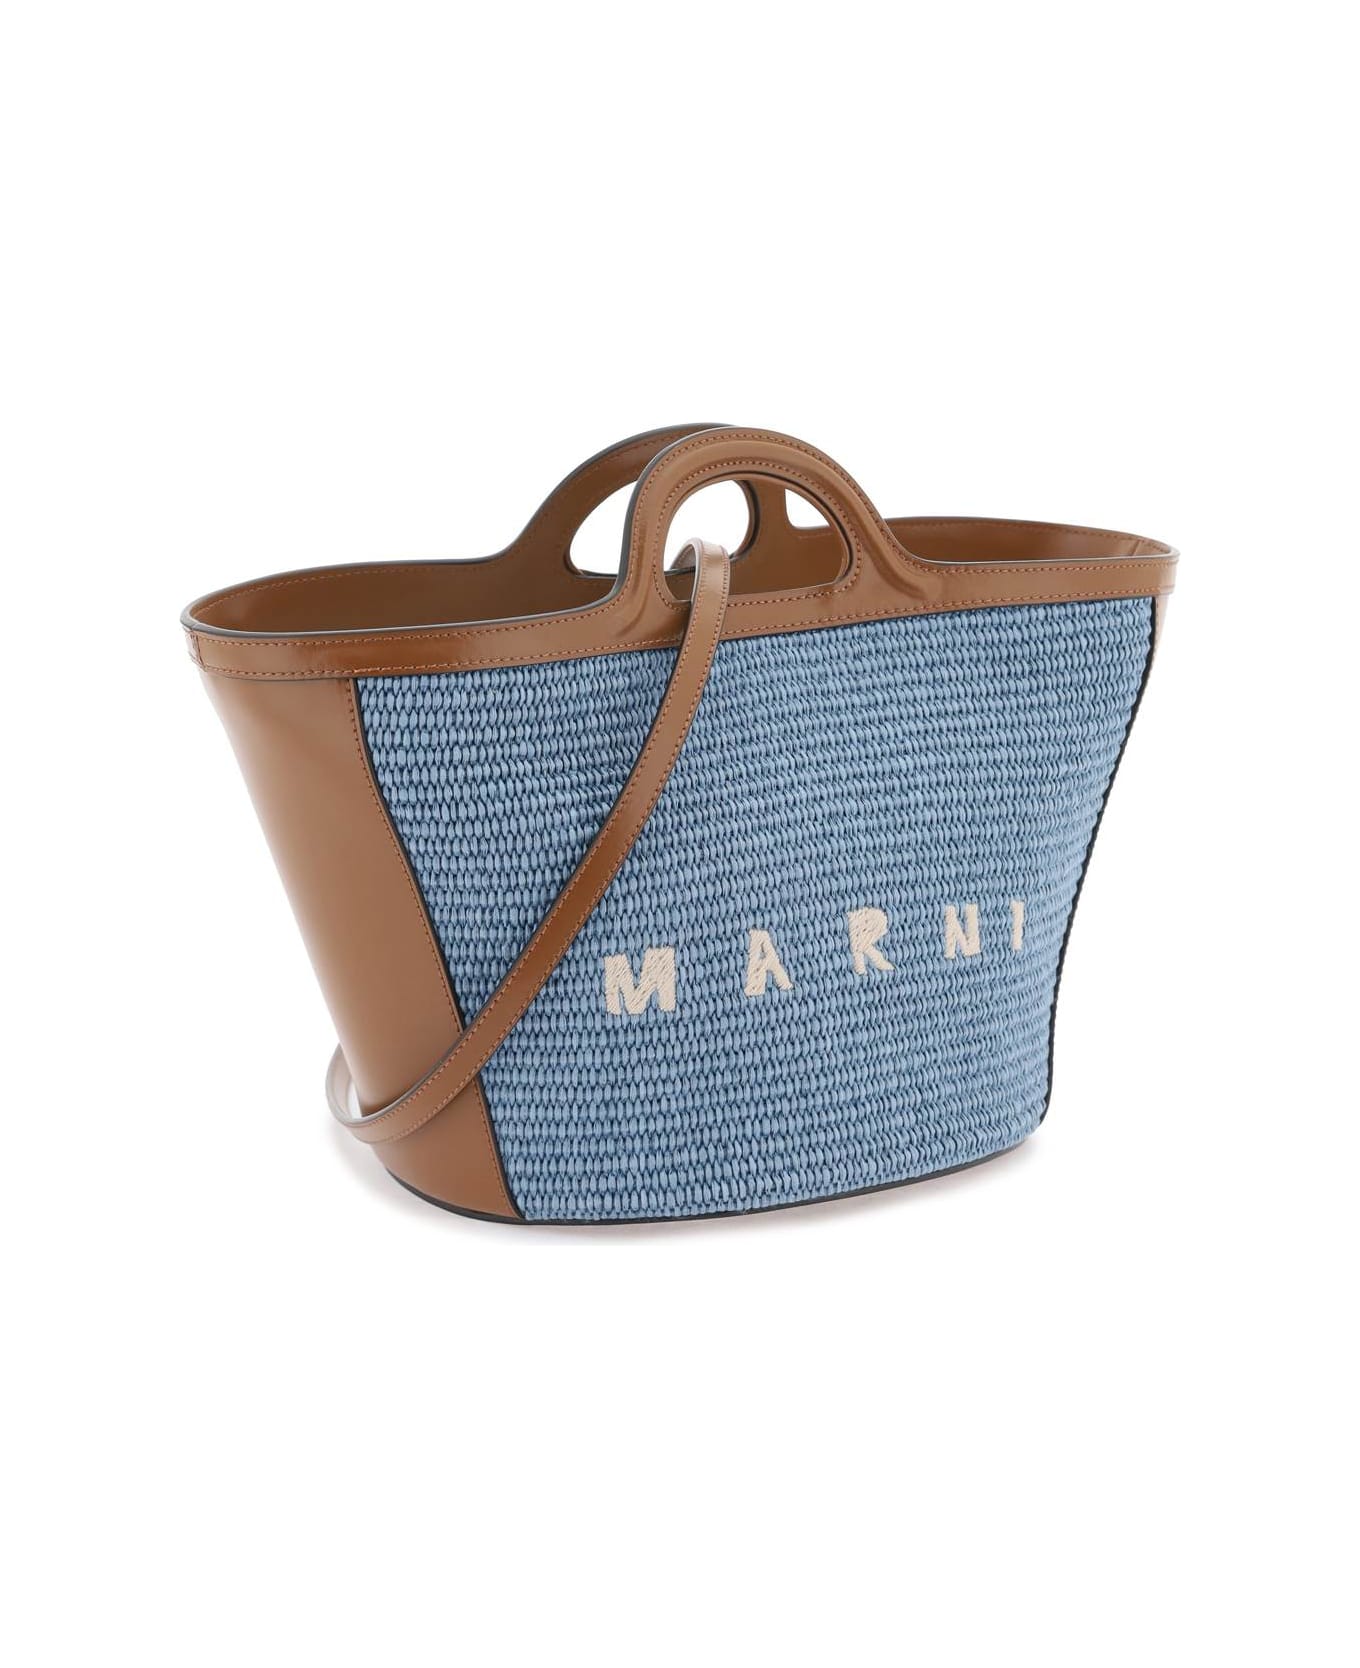 Marni Tropicalia Small Handbag - Gnawed Blue